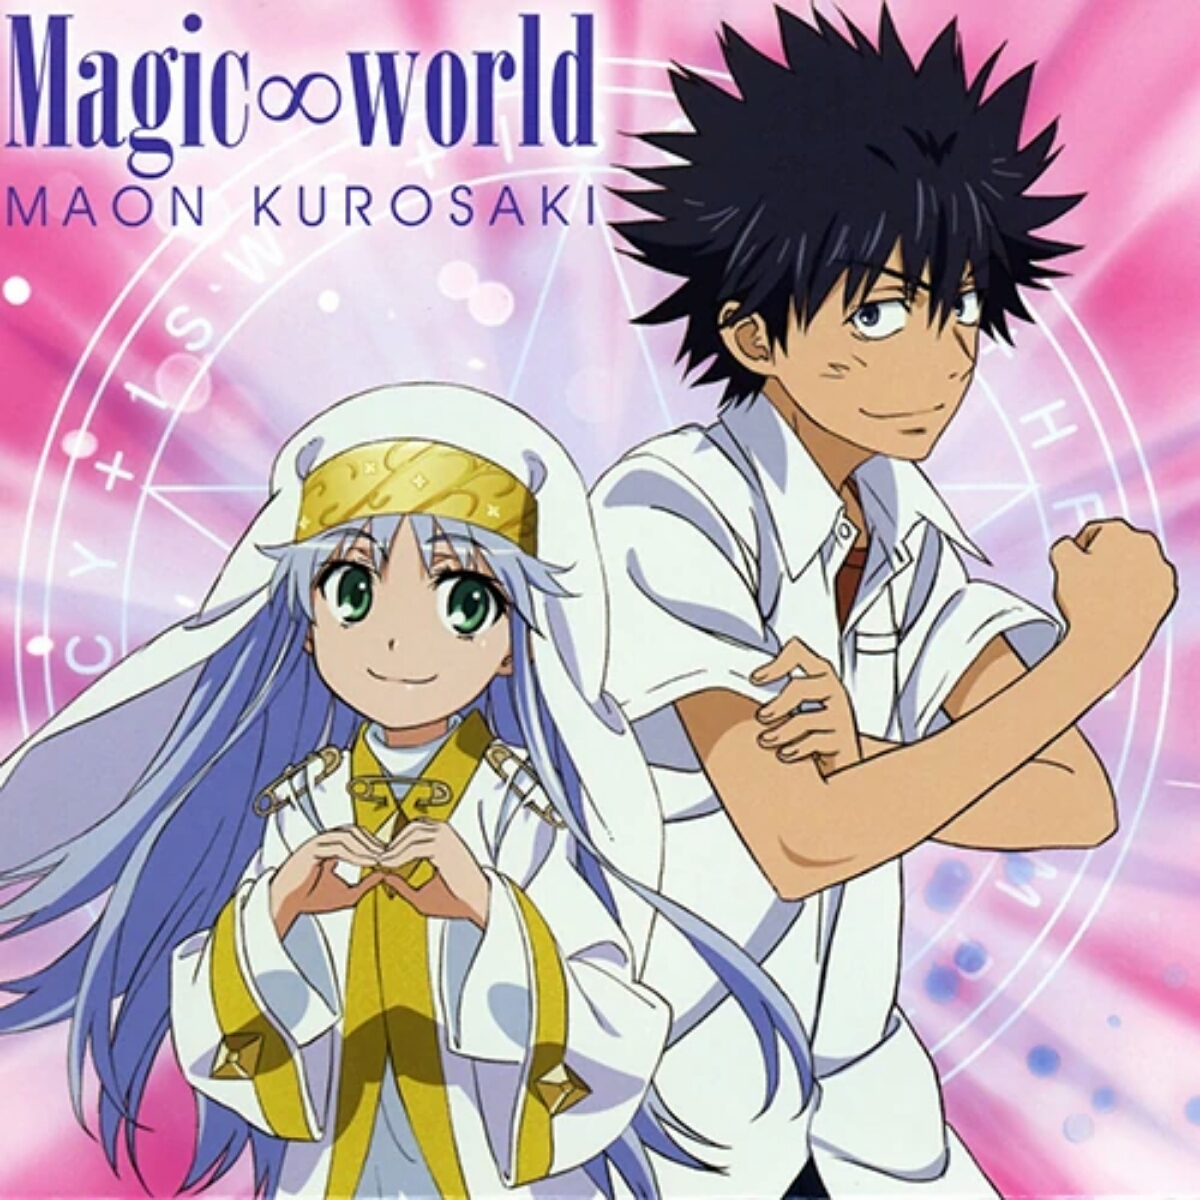 Kurosaki Maon - Magic World